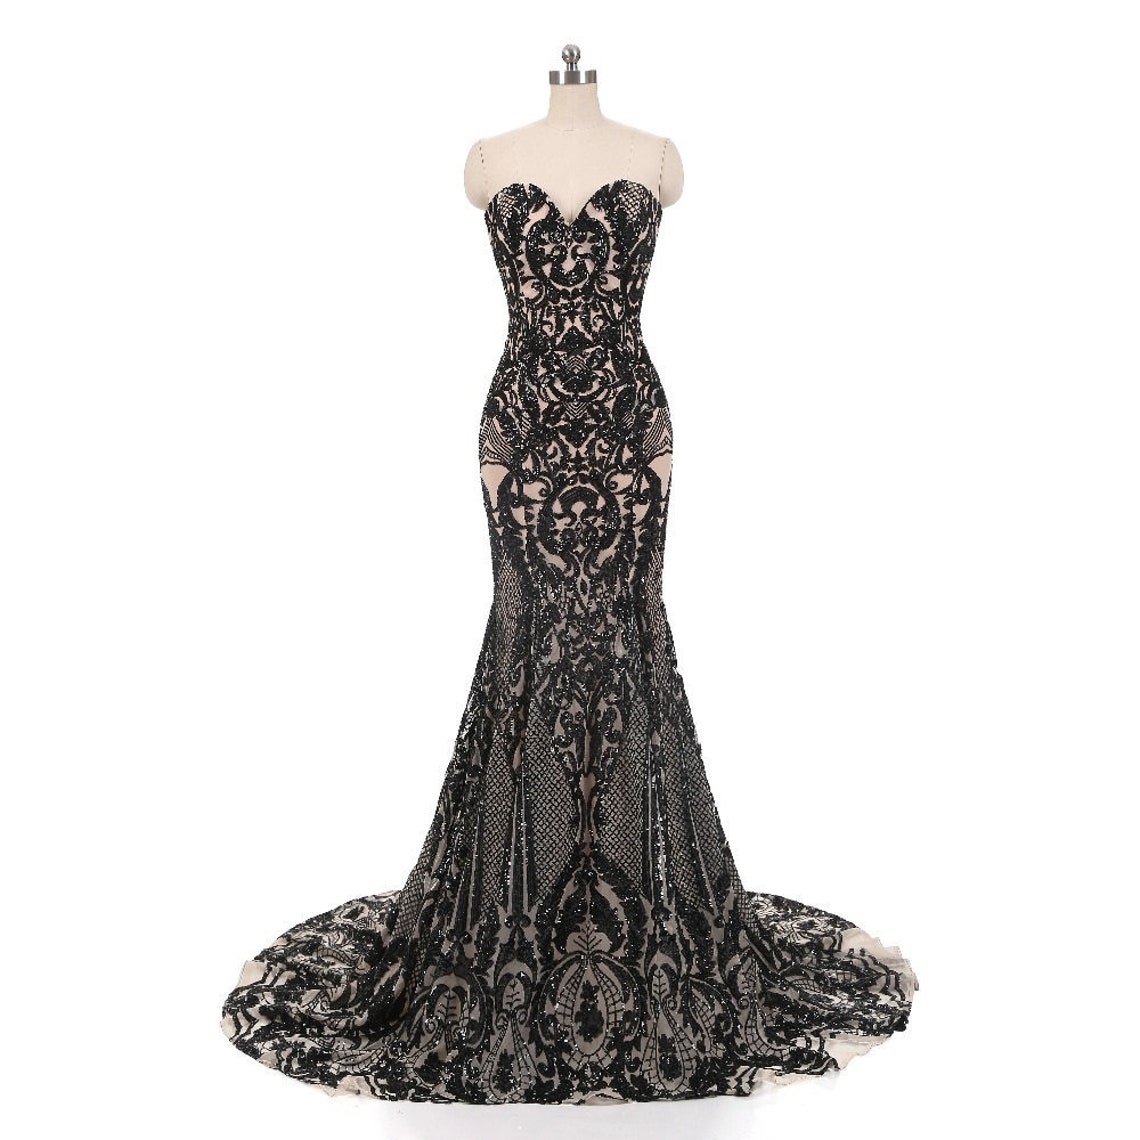 Vintage Black Lace Mermaid Trumpet Wedding Dress Sequin Sheer Black/Nude